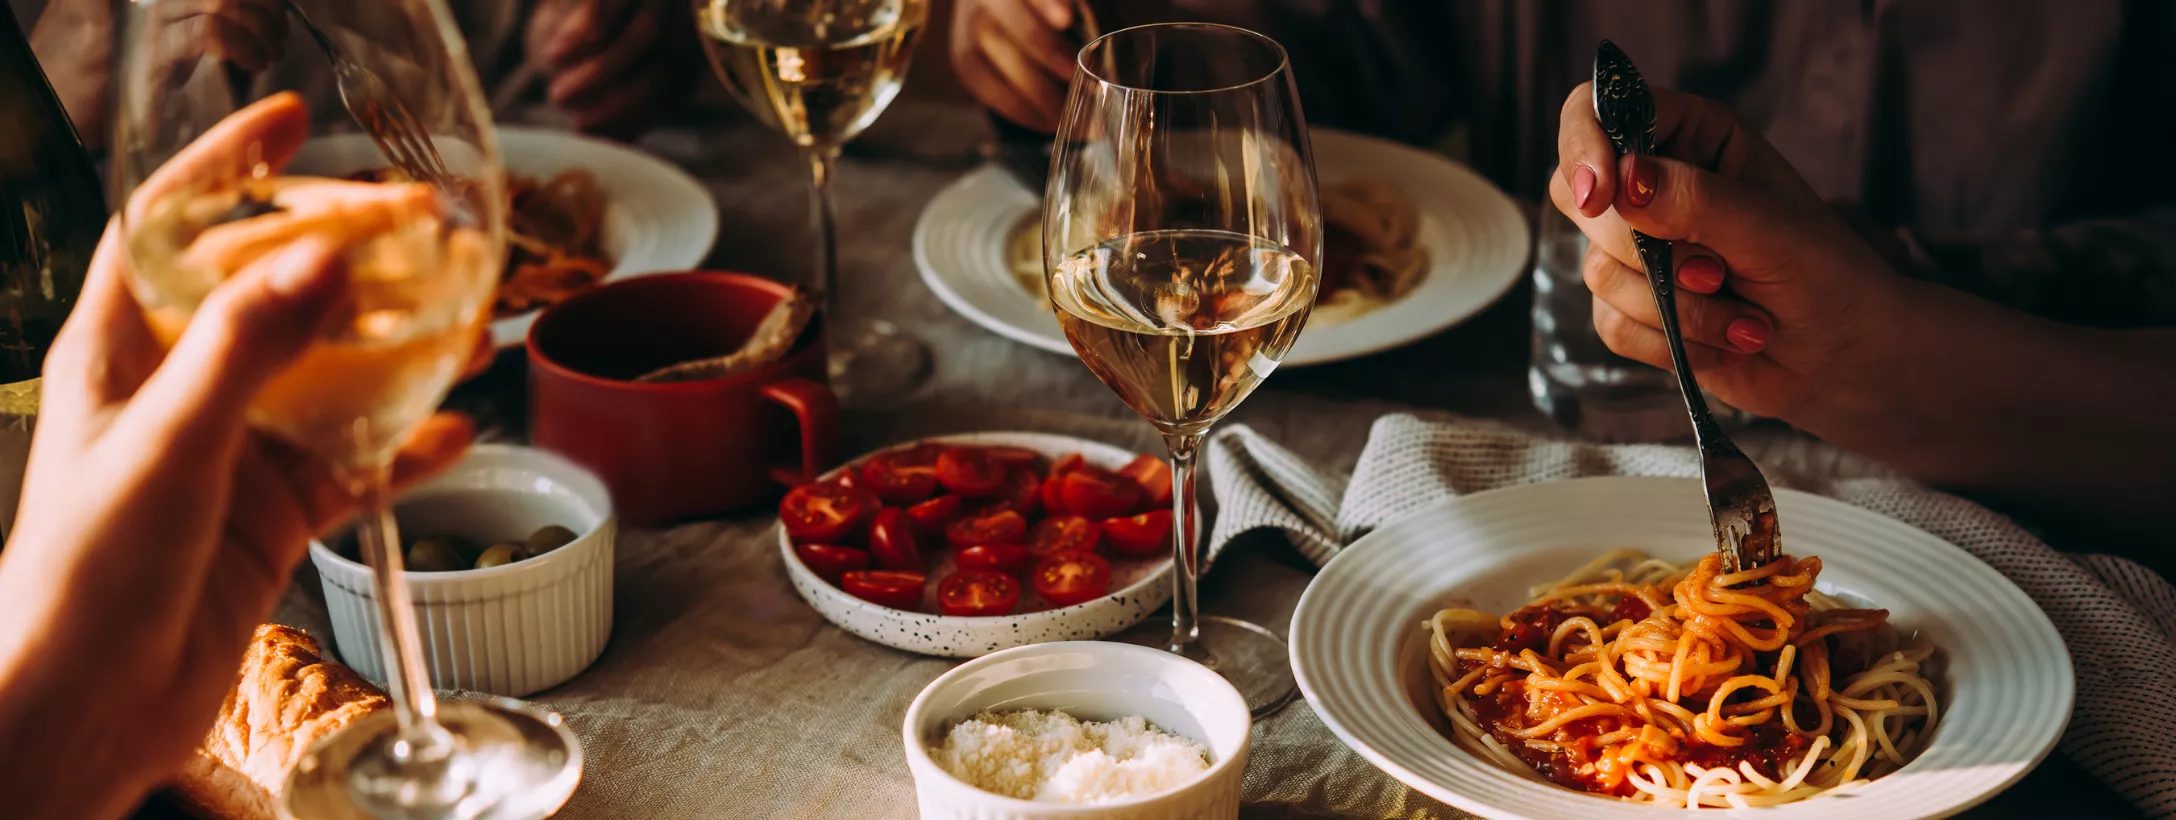 Rượu vang trắng kết hợp với đồ ăn